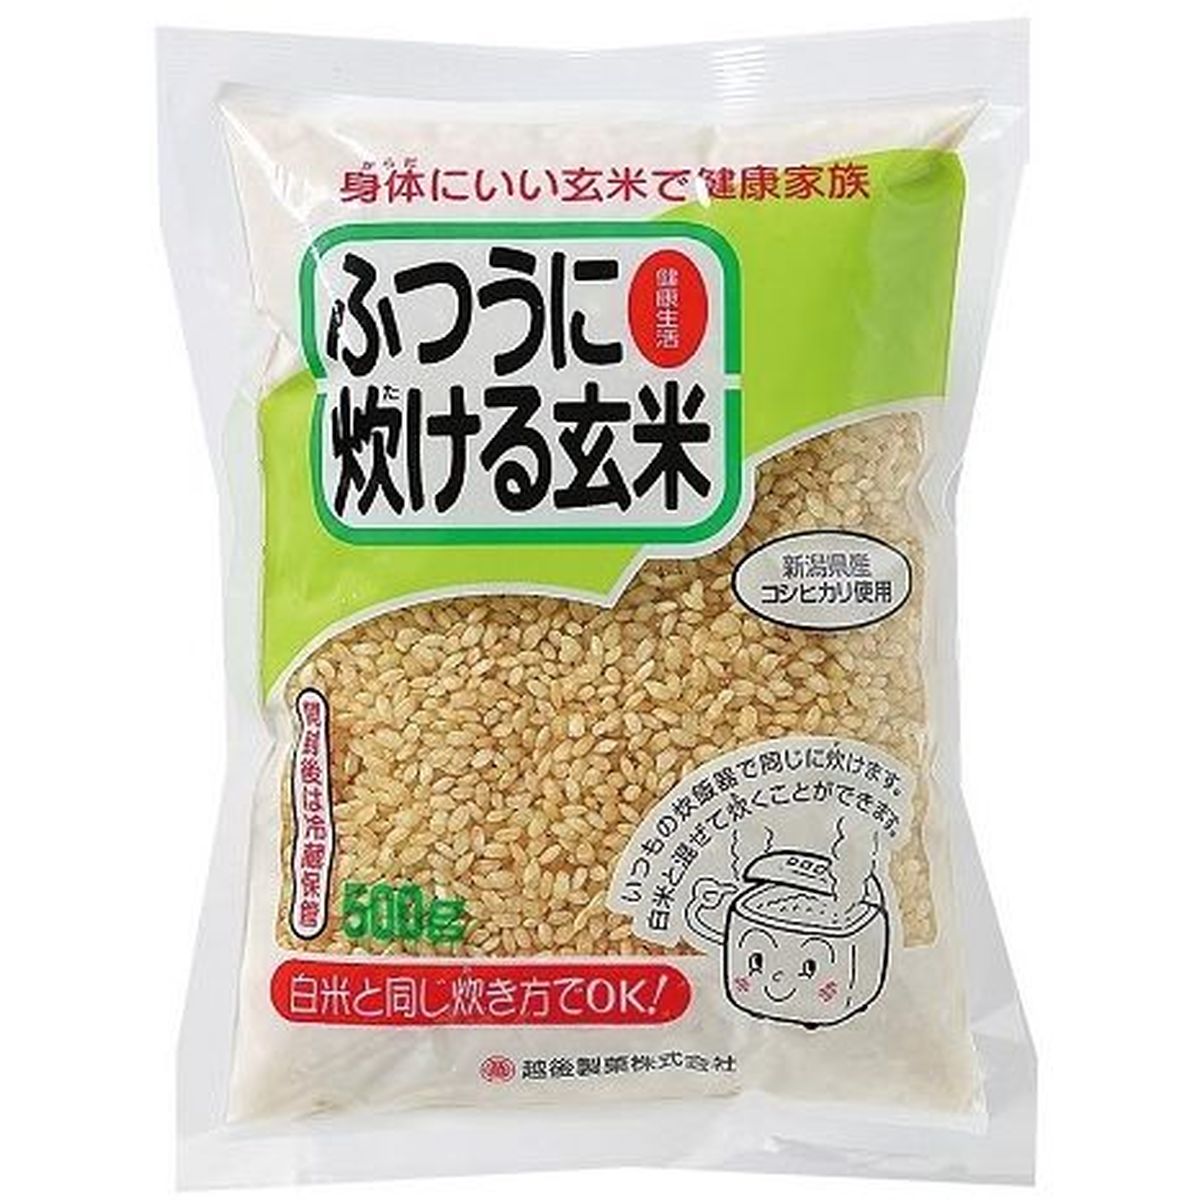 【10個入リ】越後製菓 フツウニ炊ケル玄米 コシヒカリ 500g